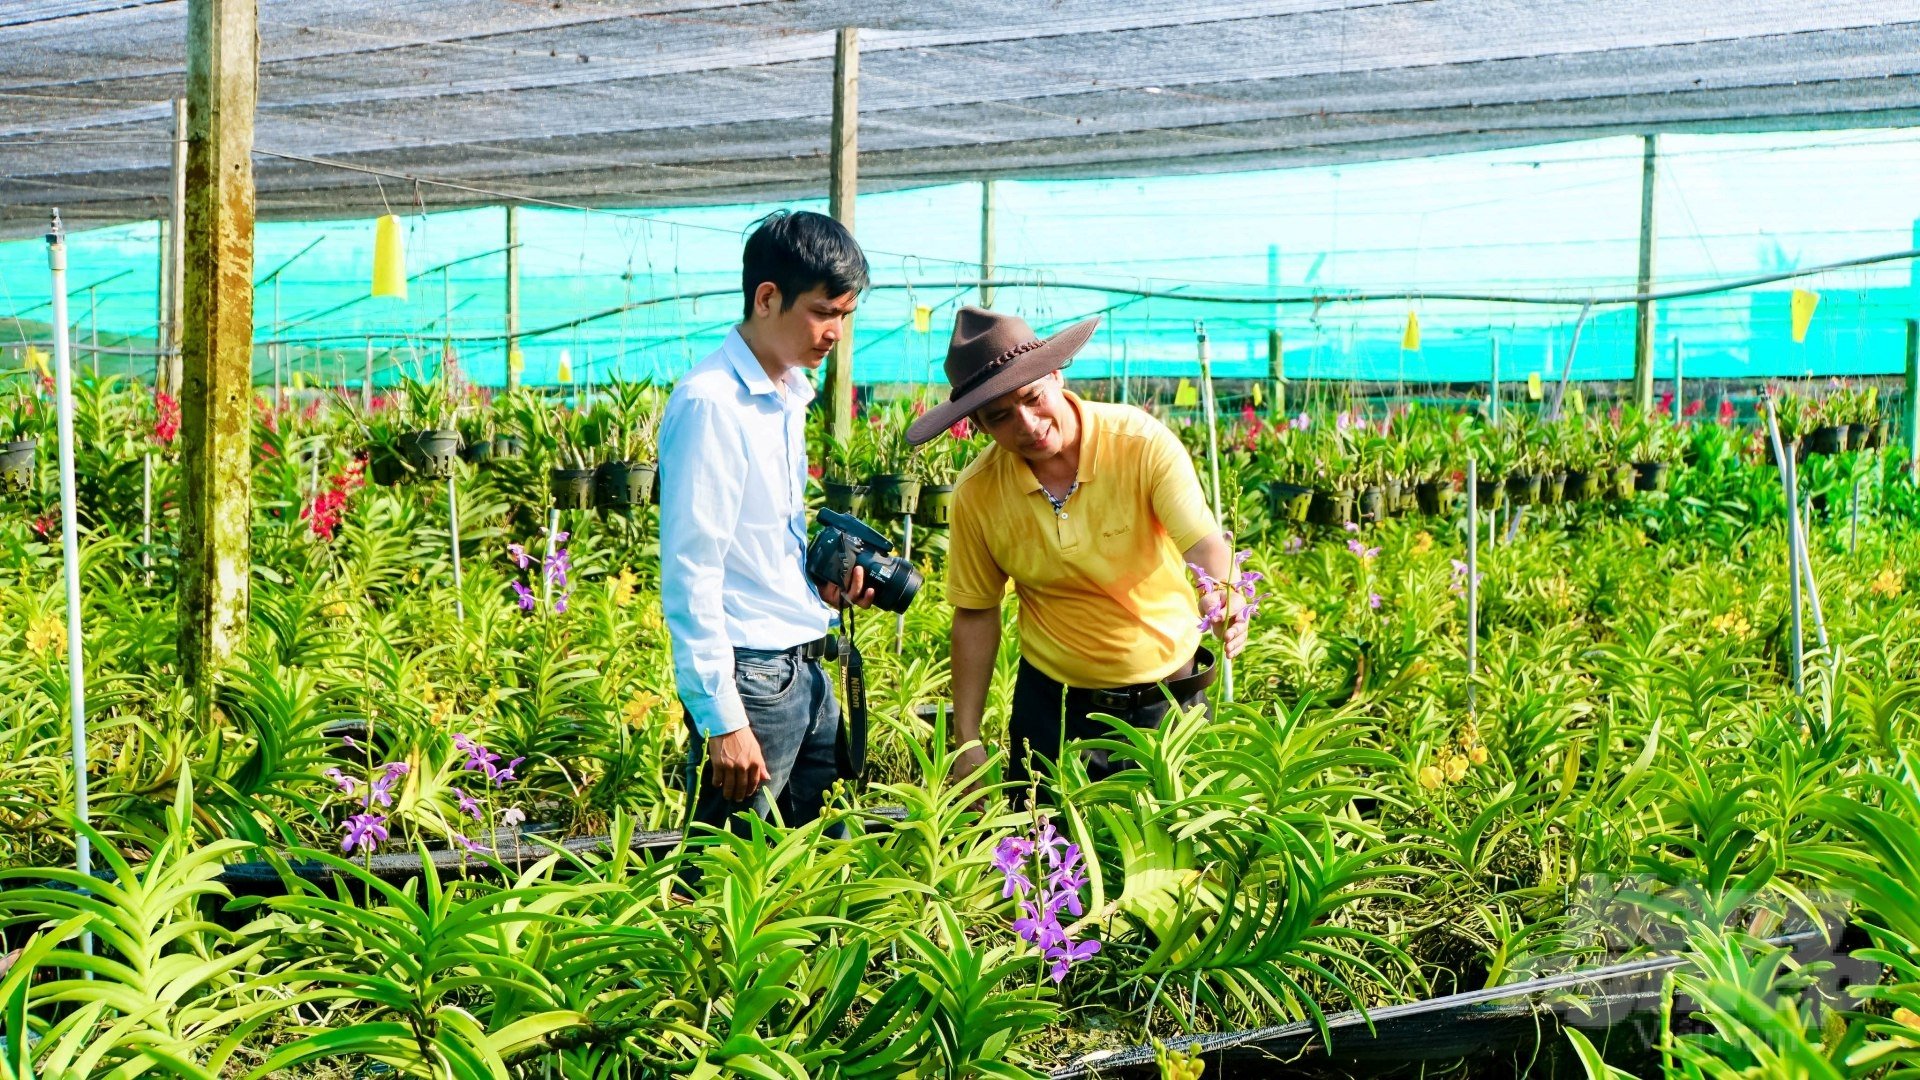 Phóng viên Báo Nông nghiệp Việt Nam được ông chủ vườn hoa lan Hoàng Hòa giới thiệu về các dòng lan và quy trình chăm sóc hoa lan trên mảnh đất đầy nắng, gió Tây Ninh. Ảnh: Lê Bình.